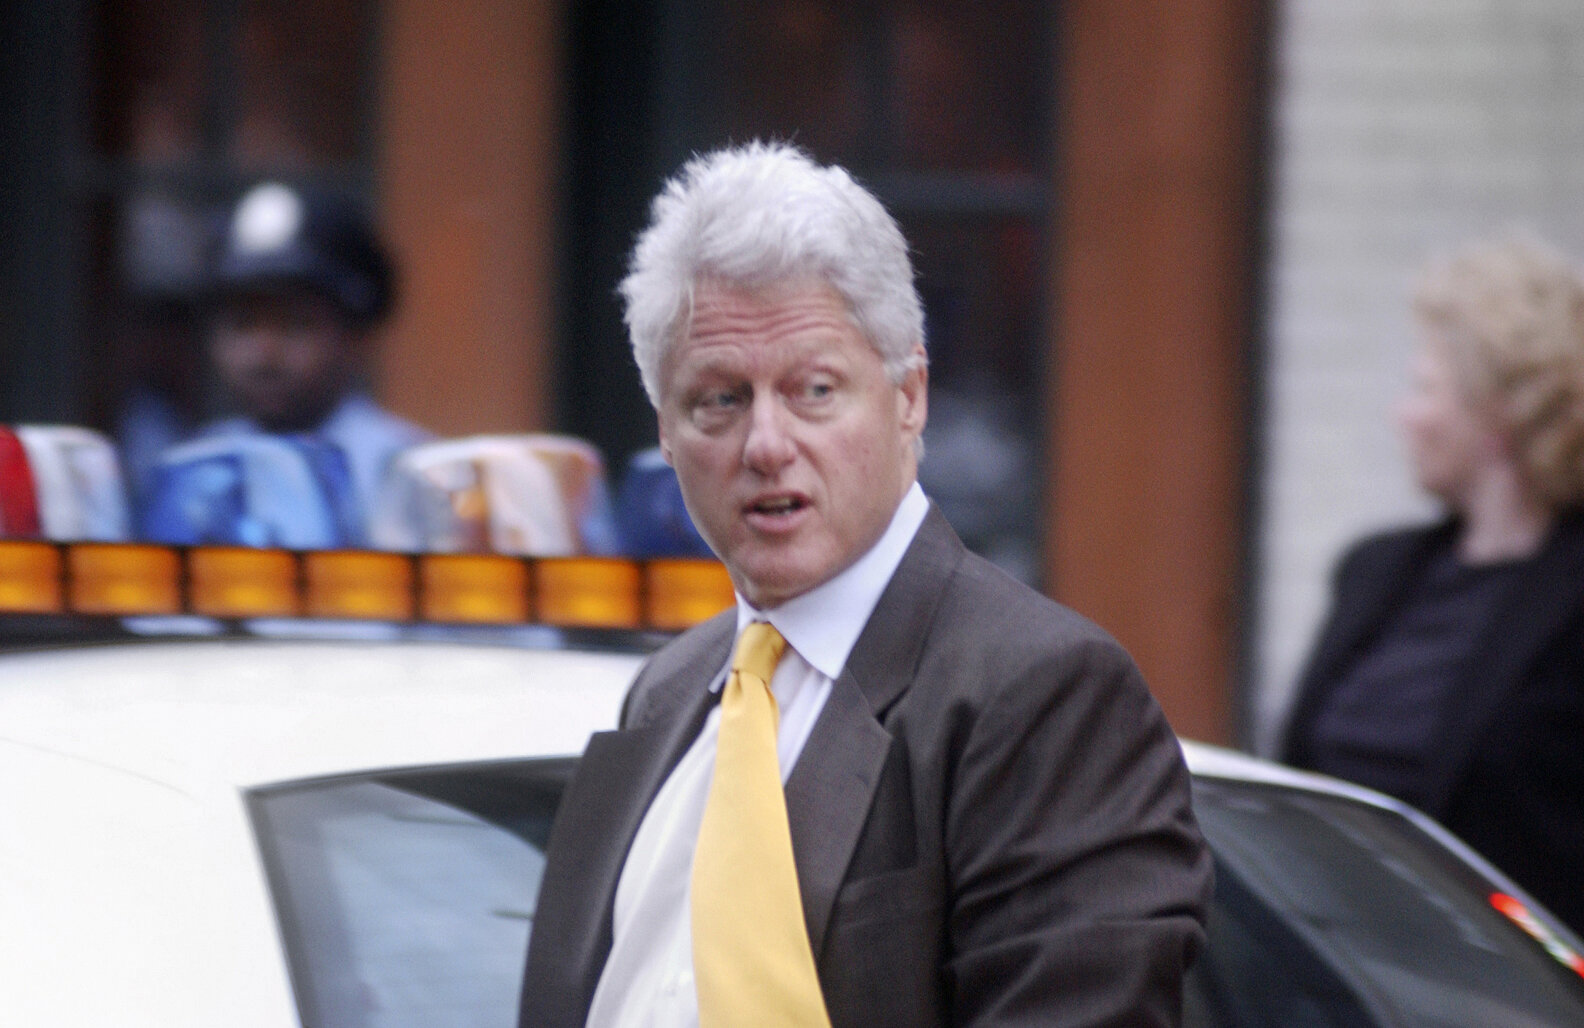 President Bill Clinton 